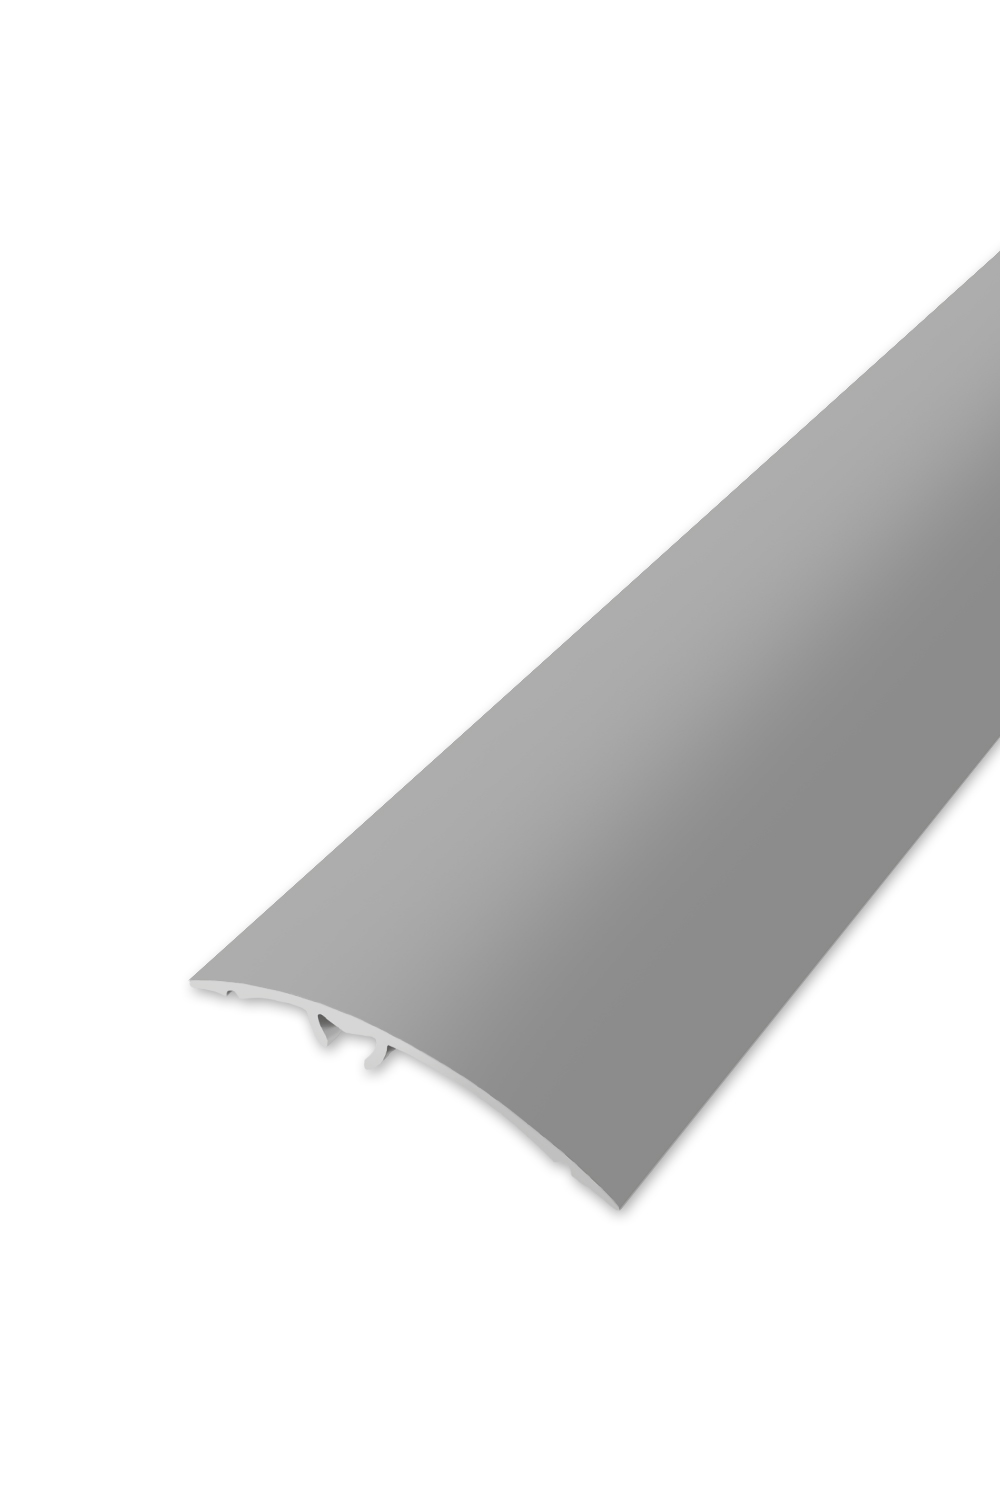 Přechodová lišta WELL 50 - Stříbrná 270 cm